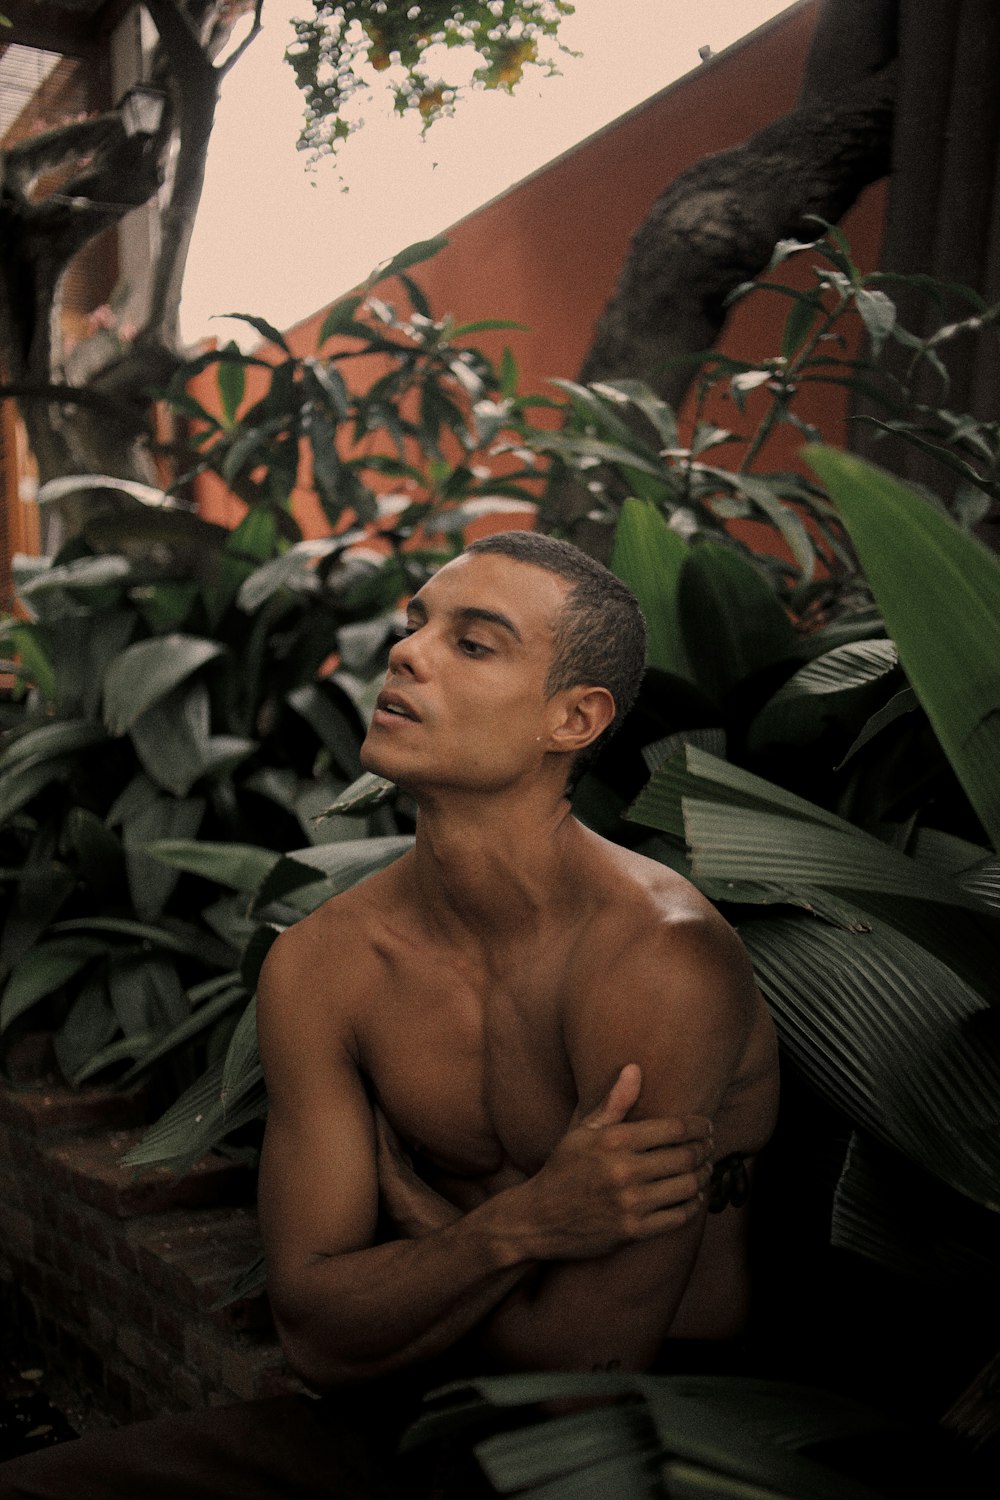 Un hombre sin camisa sentado frente a unas plantas